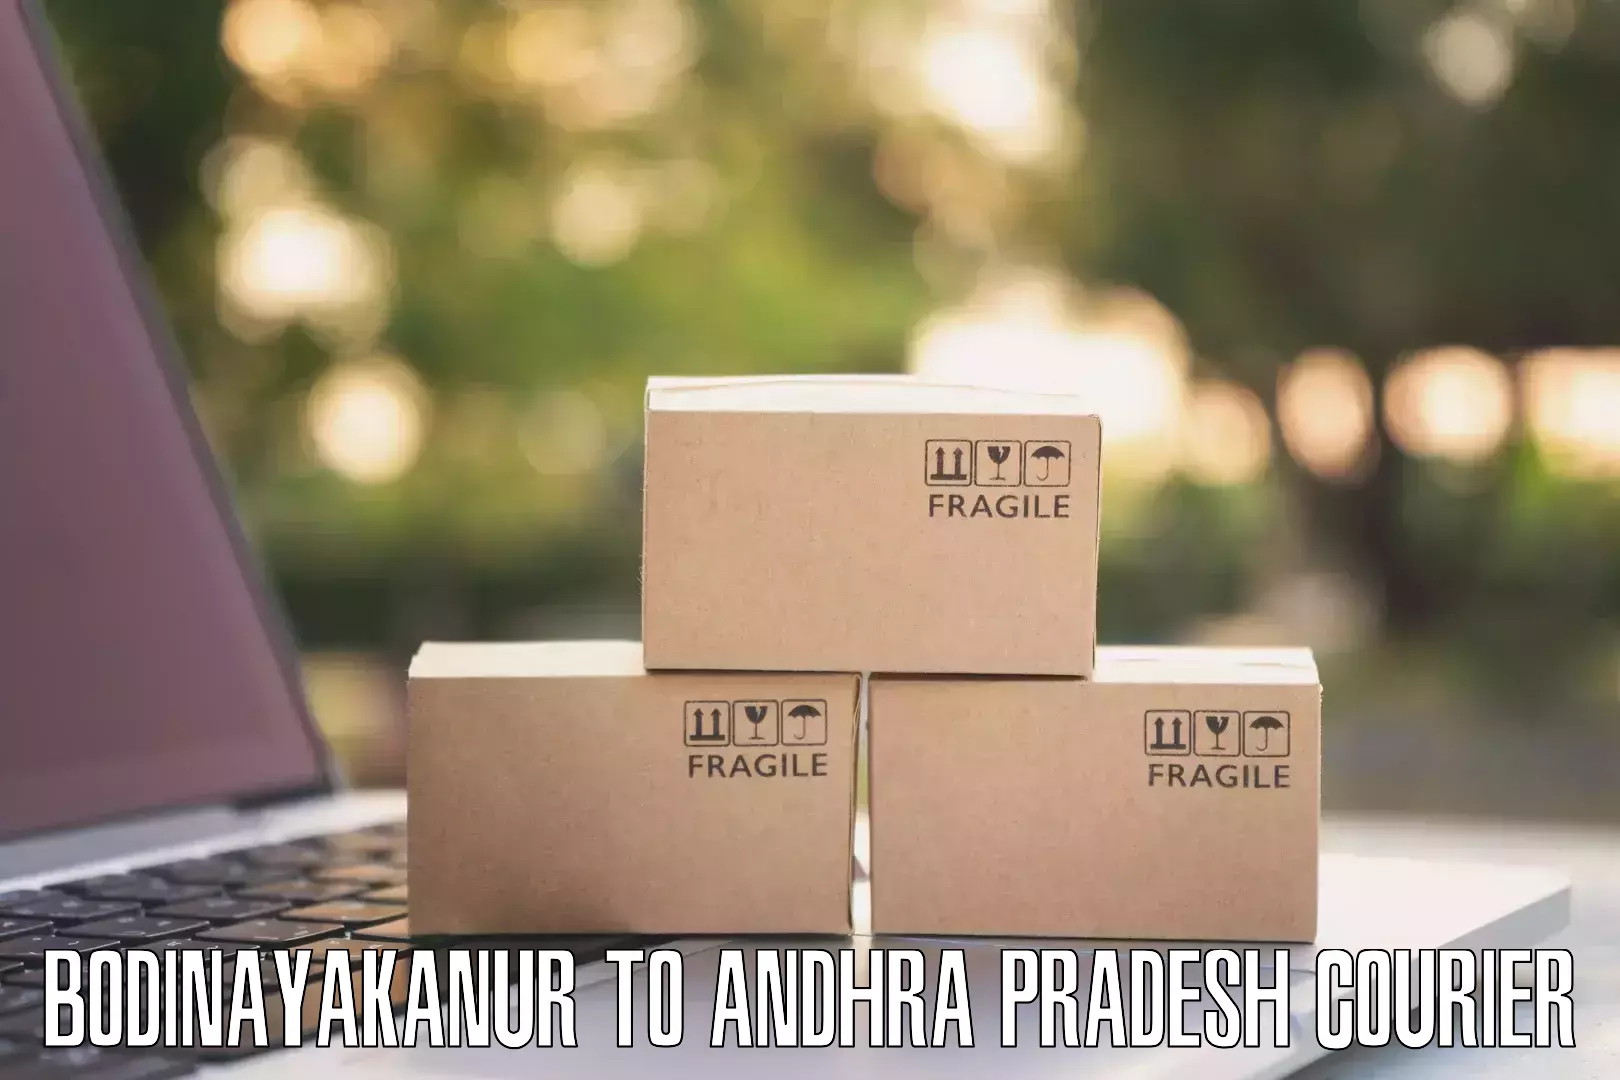 Customer-centric shipping in Bodinayakanur to Naidupeta